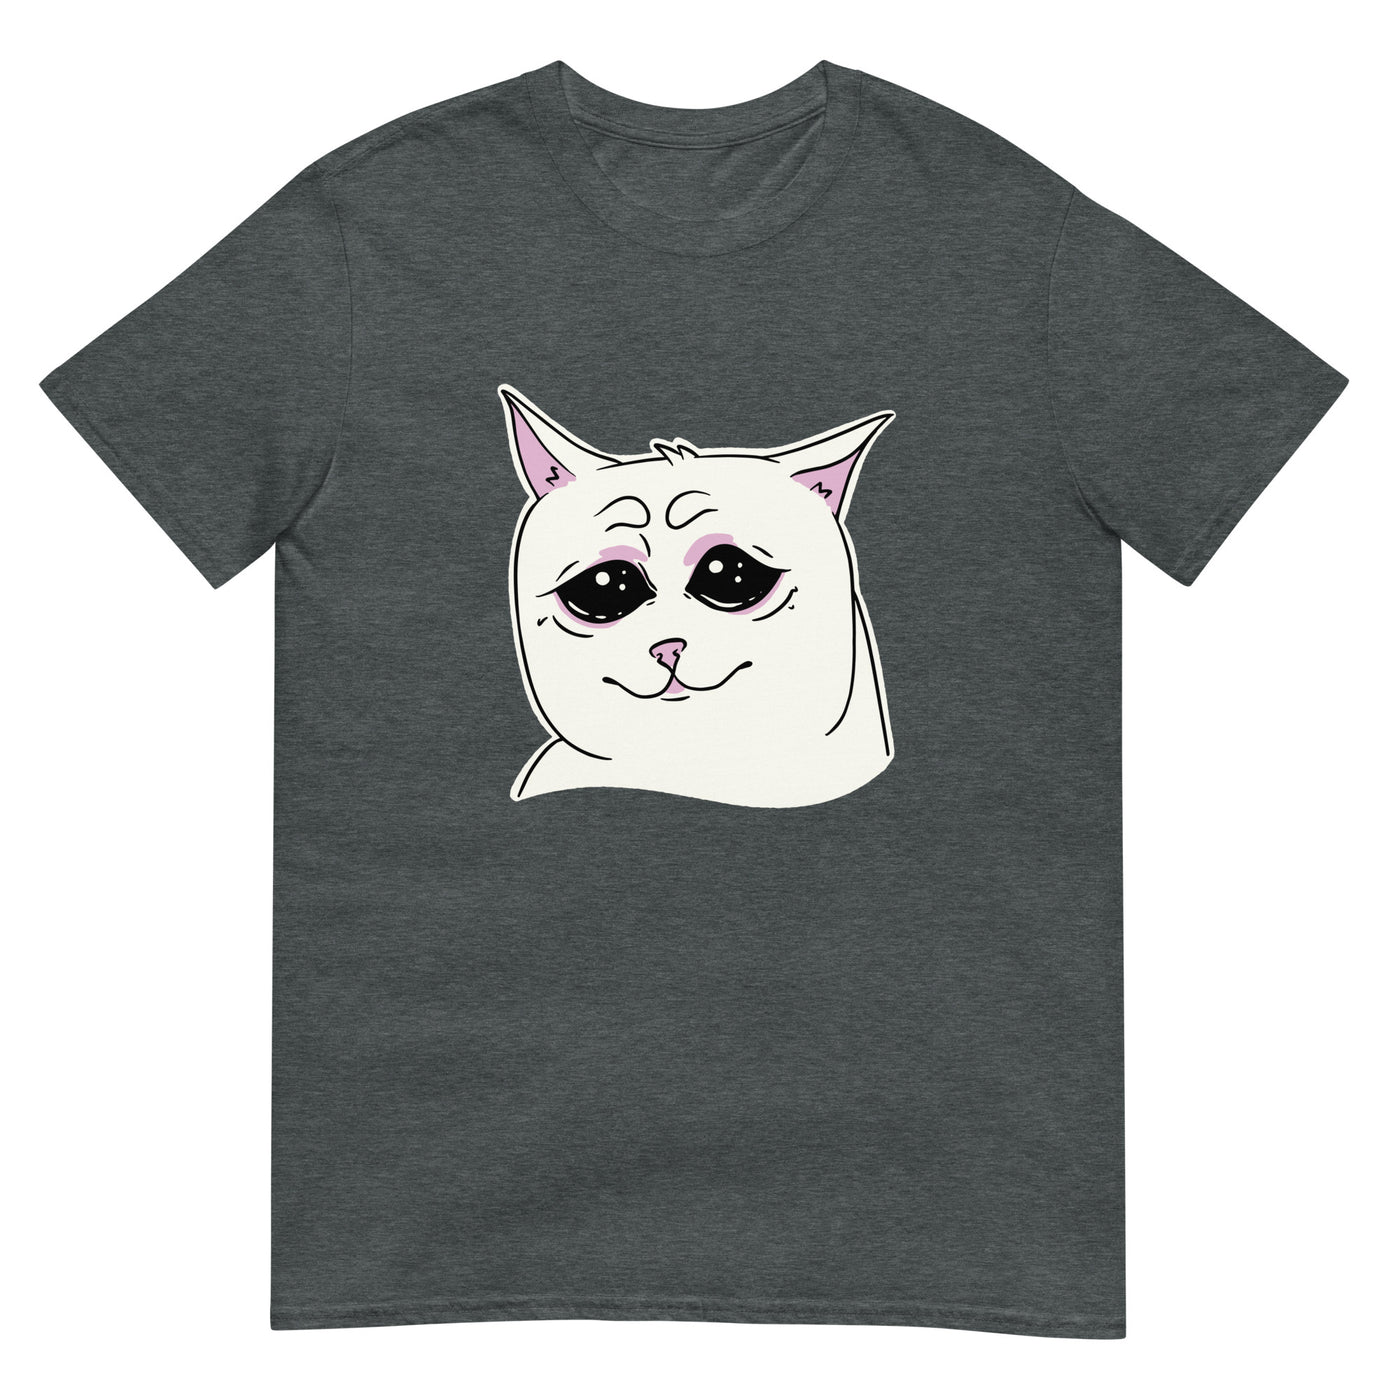 Weinende Katze mit traurigem Gesicht - Herren T-Shirt Other_Niches xxx yyy zzz Dark Heather